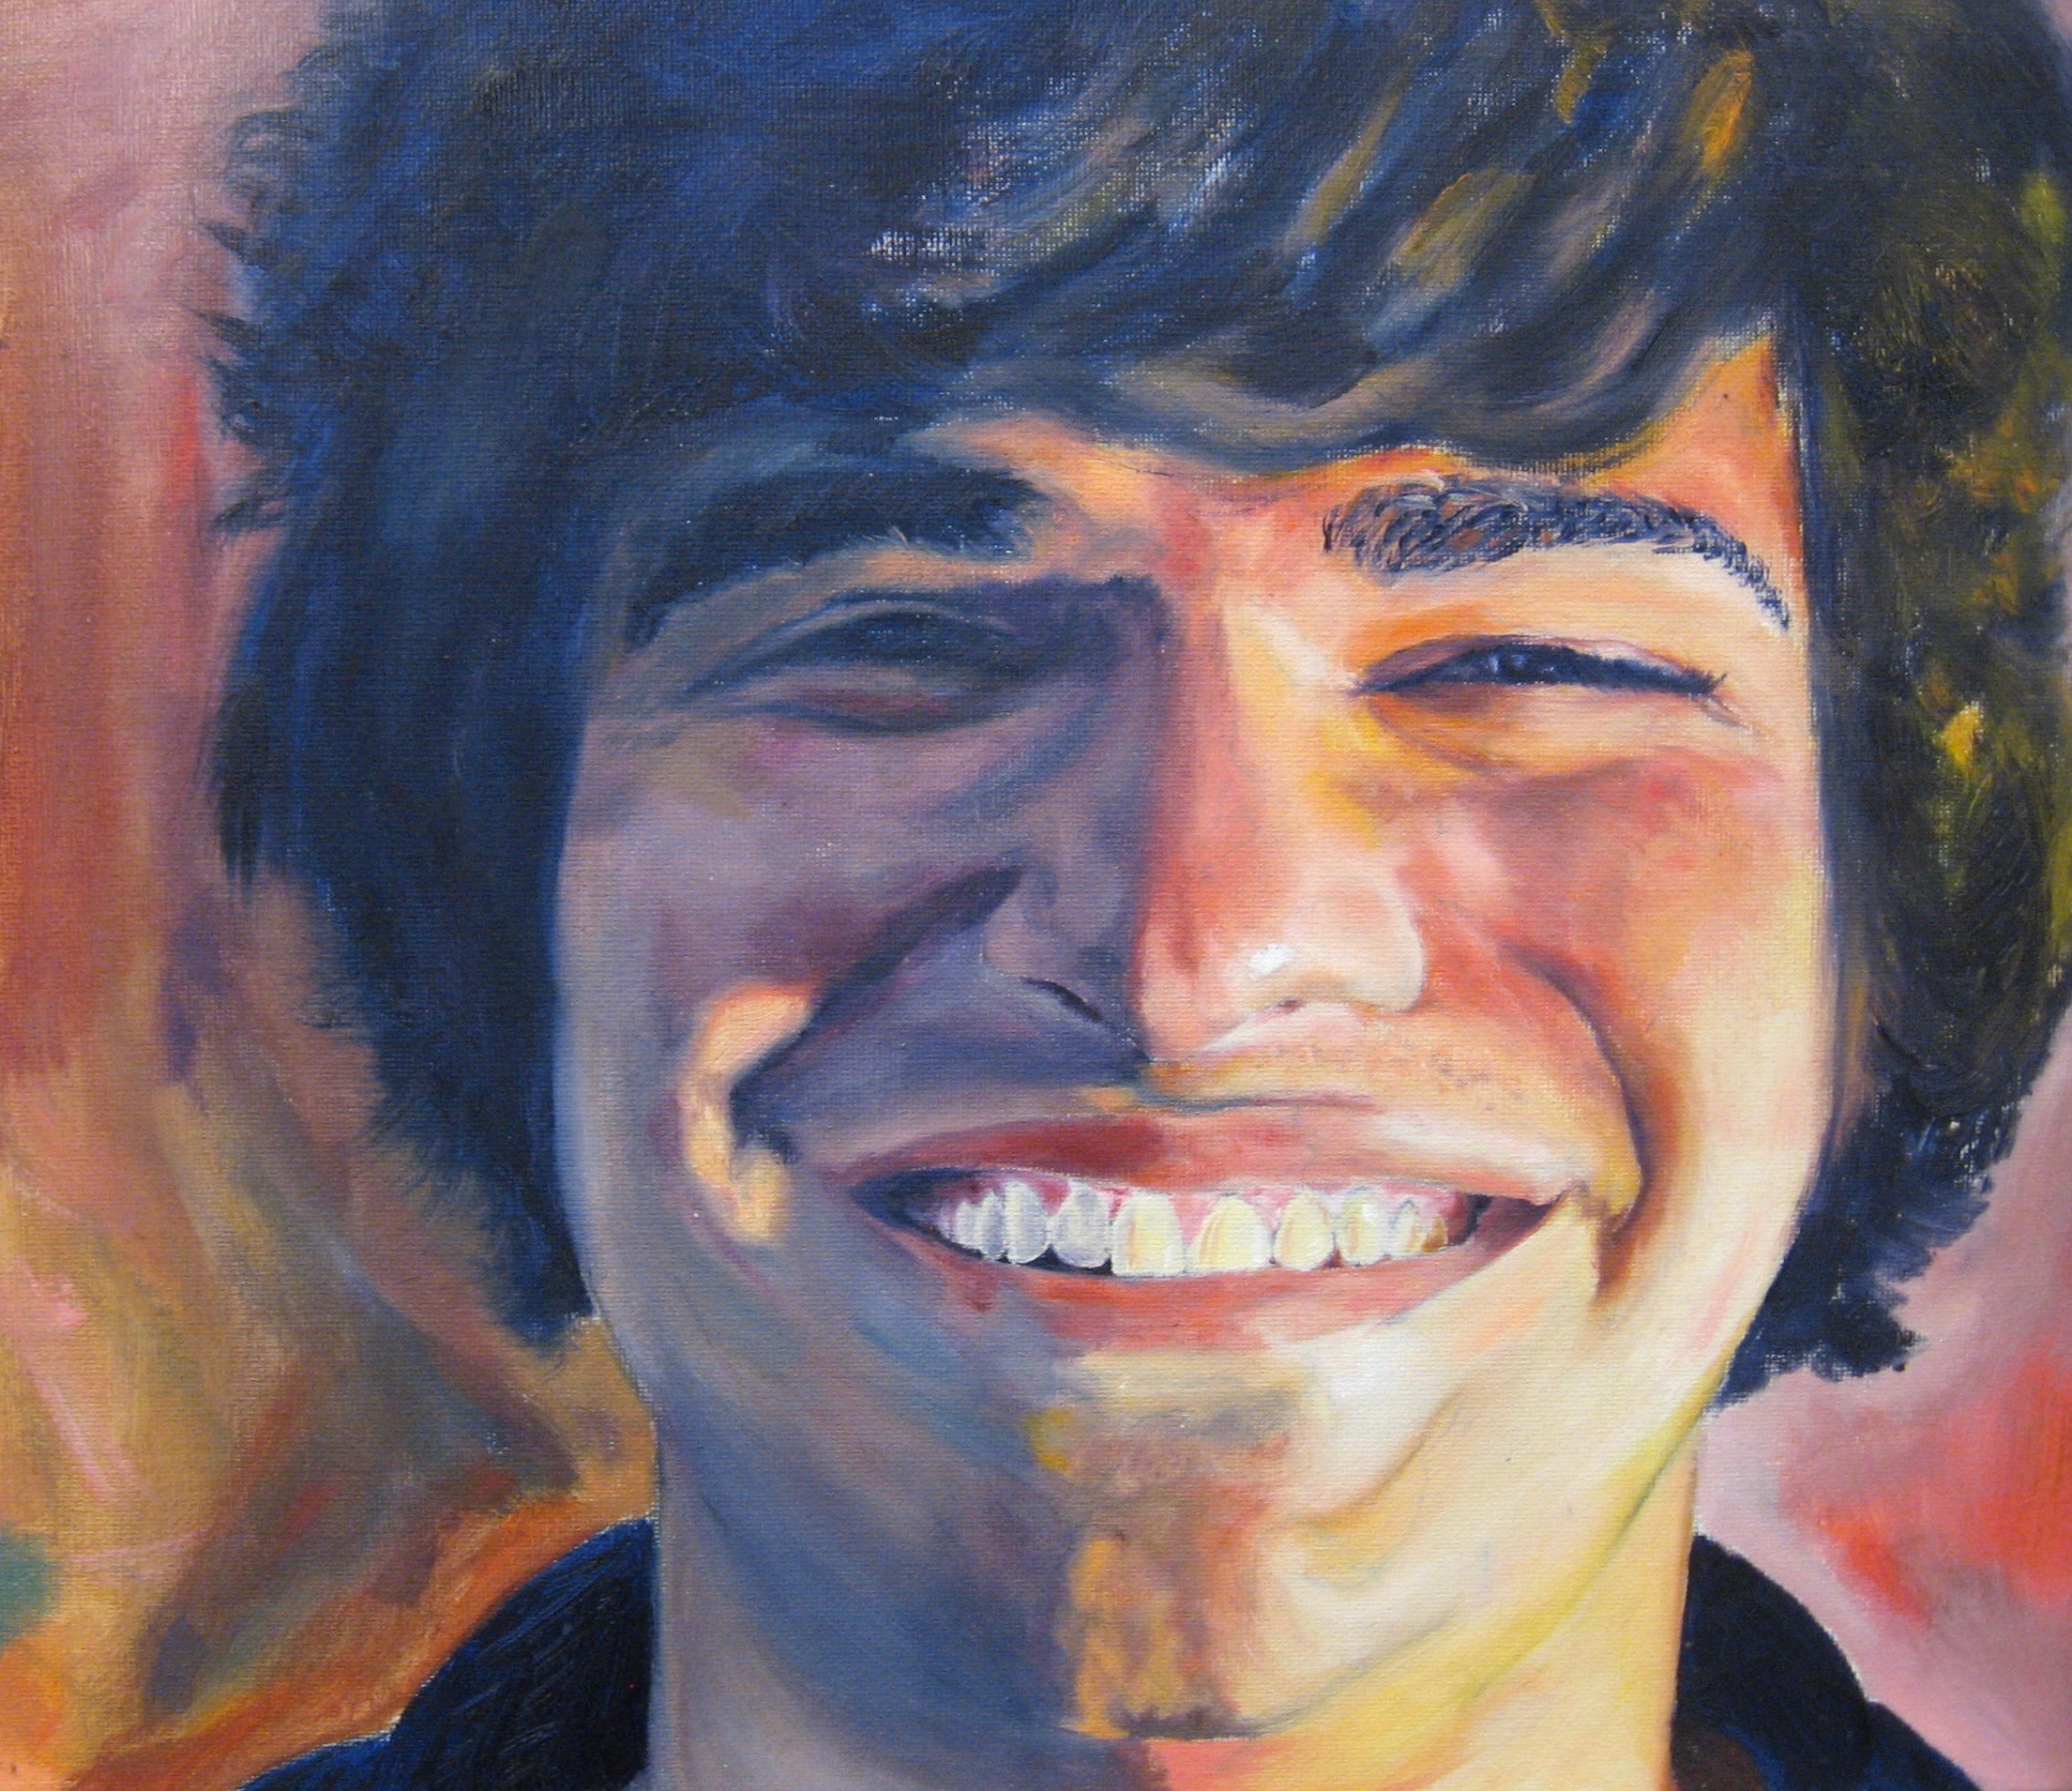 Zach portrait painting